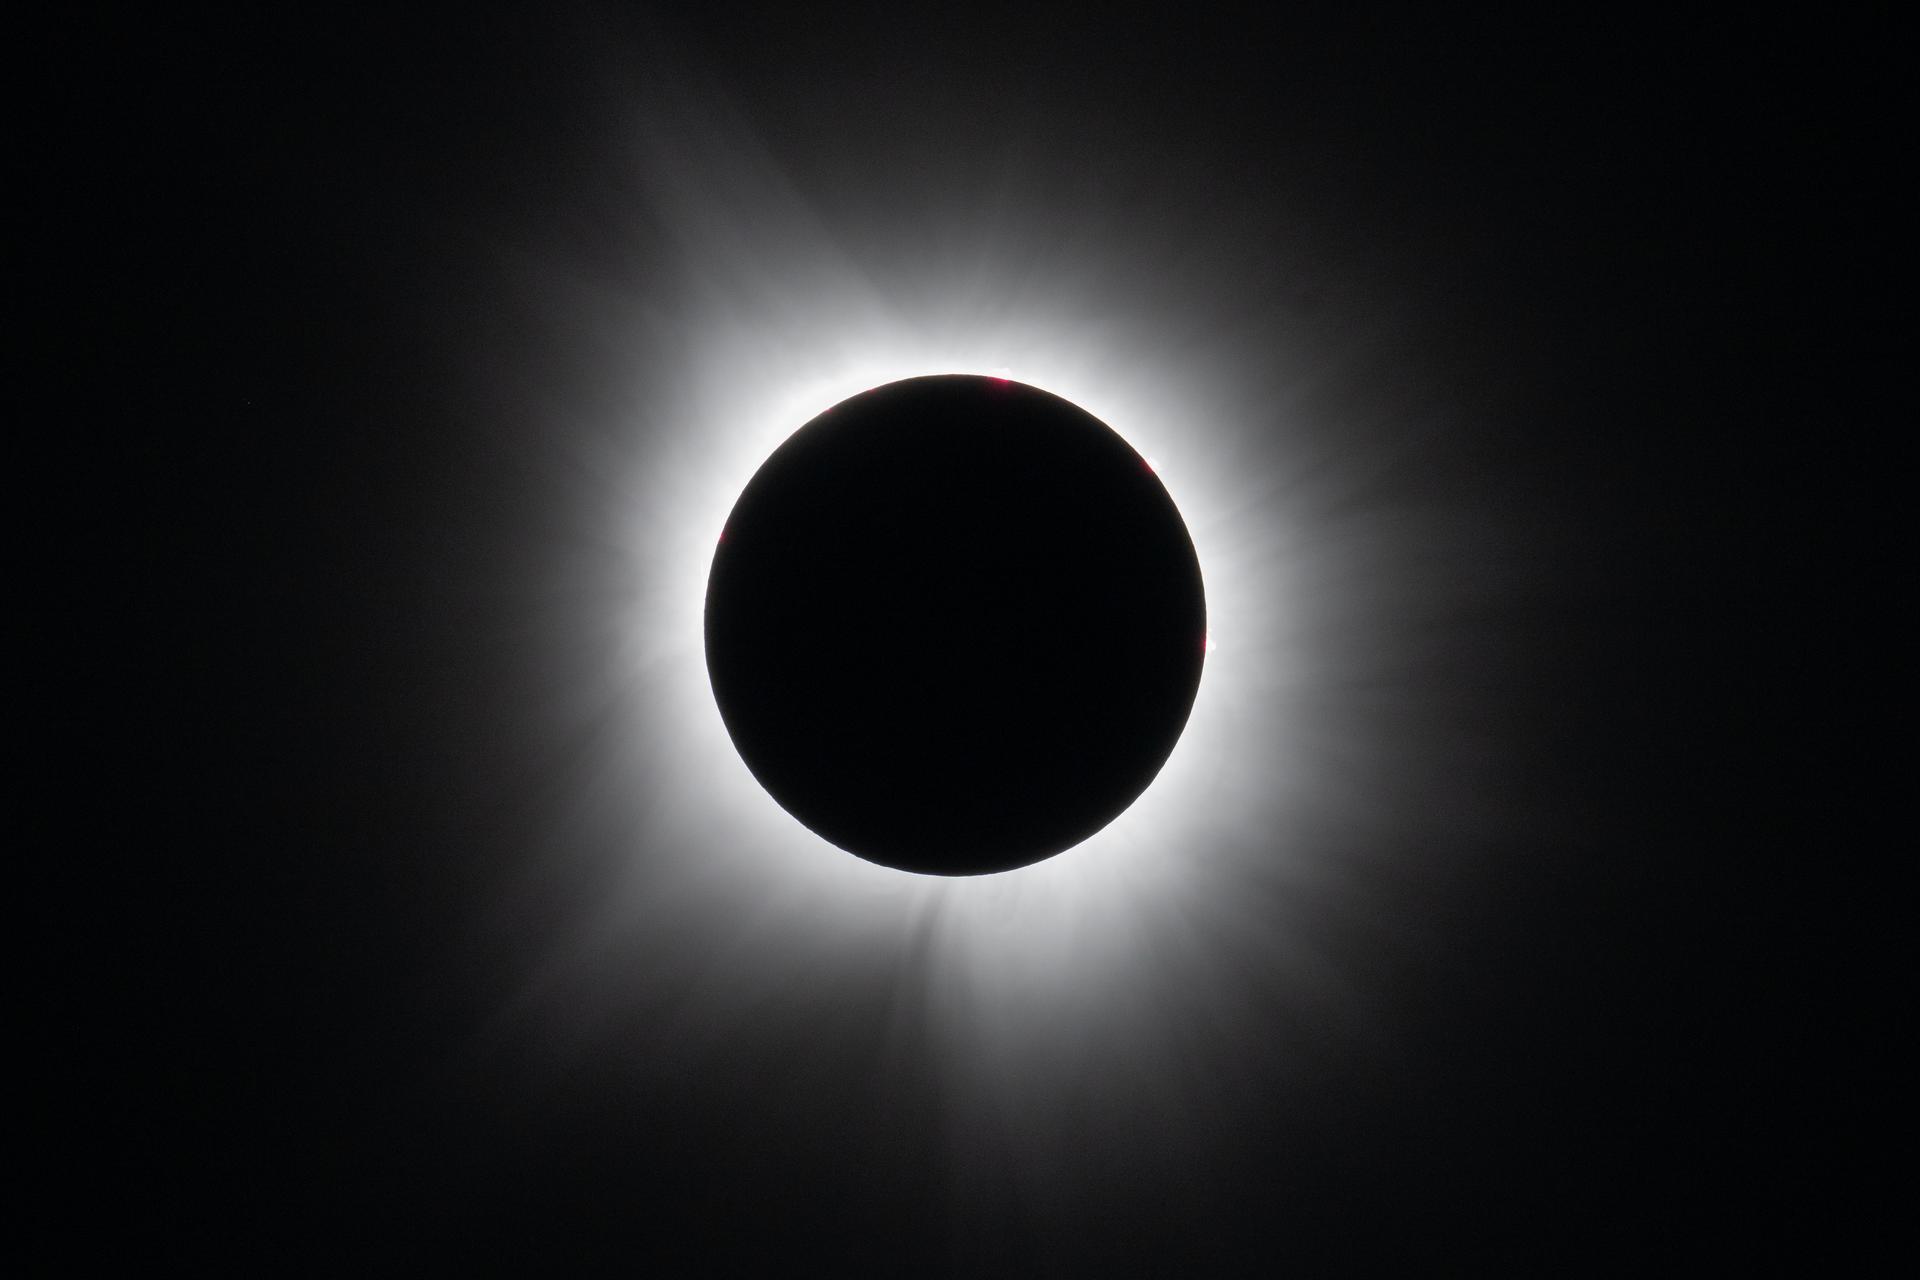 在黑色背景下是日全食。它是一个黑色的圆圈，周围环绕着白色、细弱的光流，从黑色圆圈向各个方向流动。